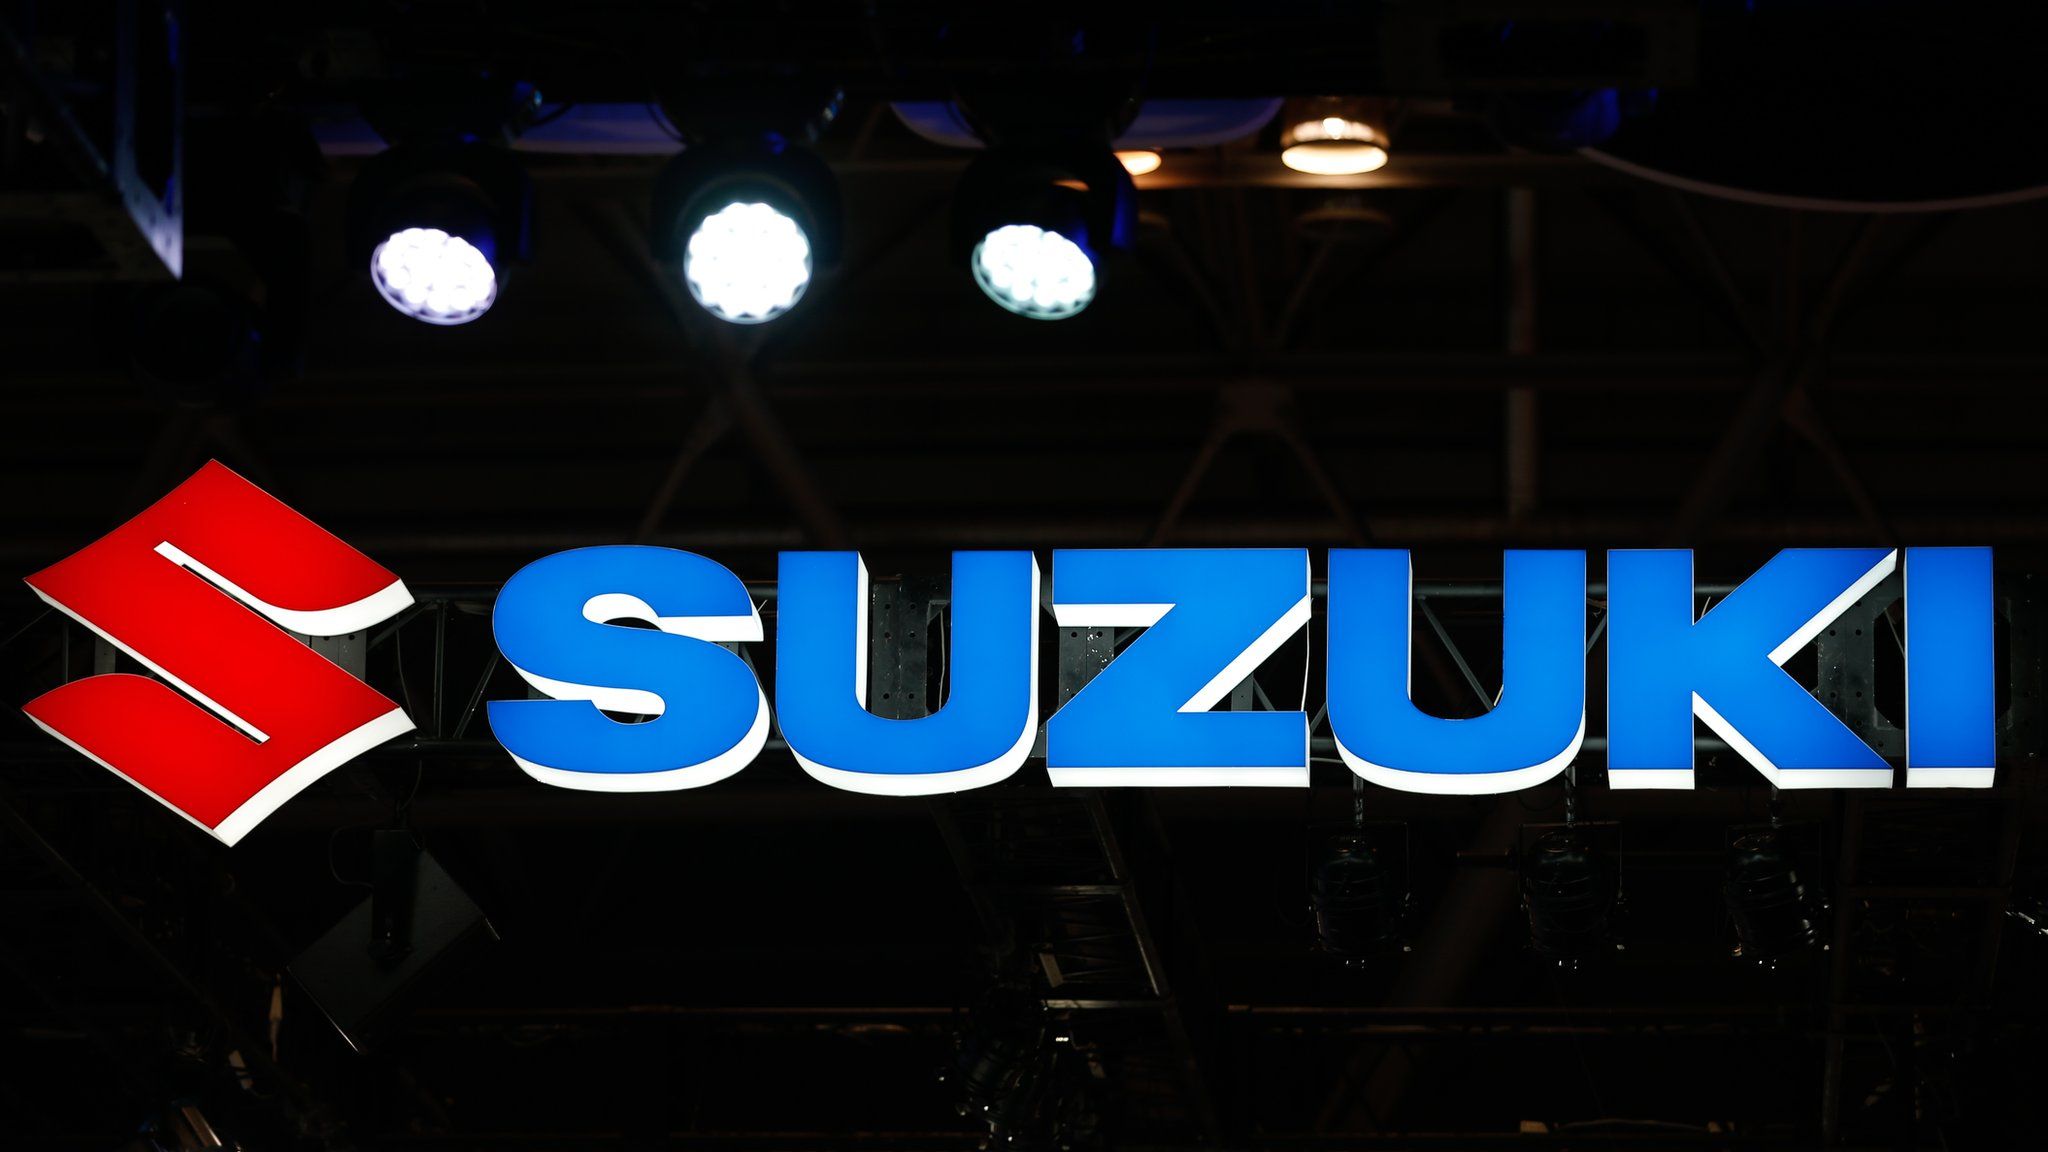 Suzuki logo at a car show